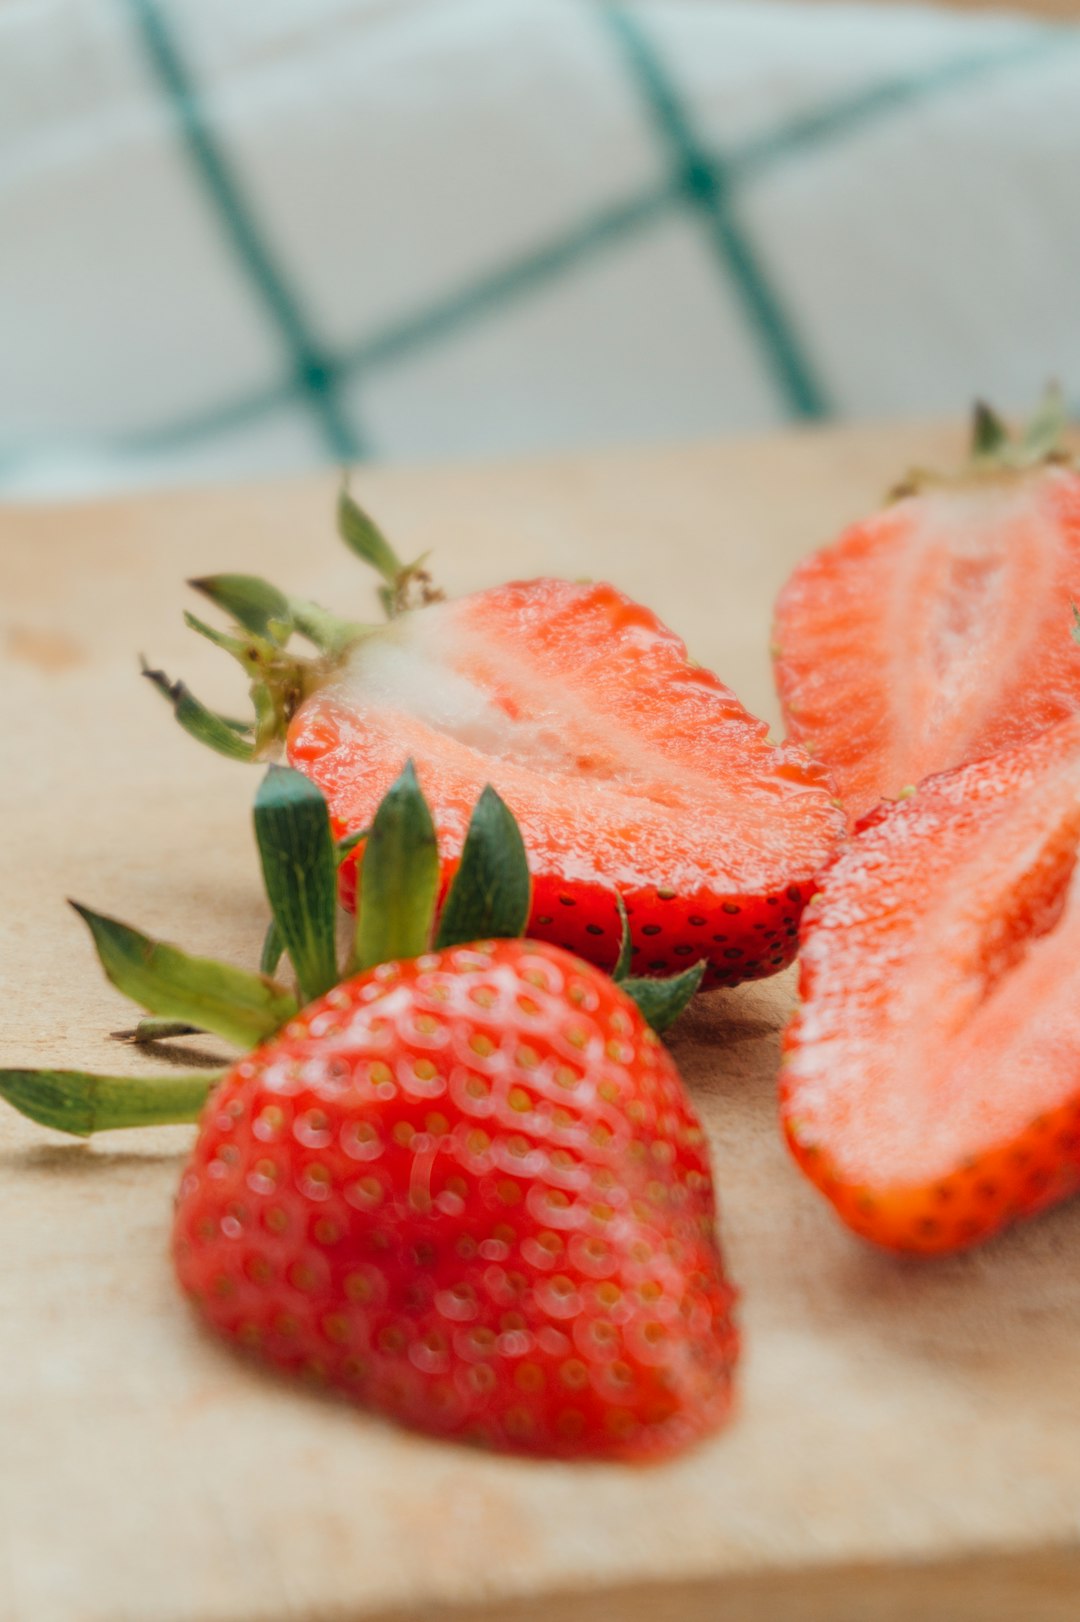 sliced strawberries on white ceramic plate